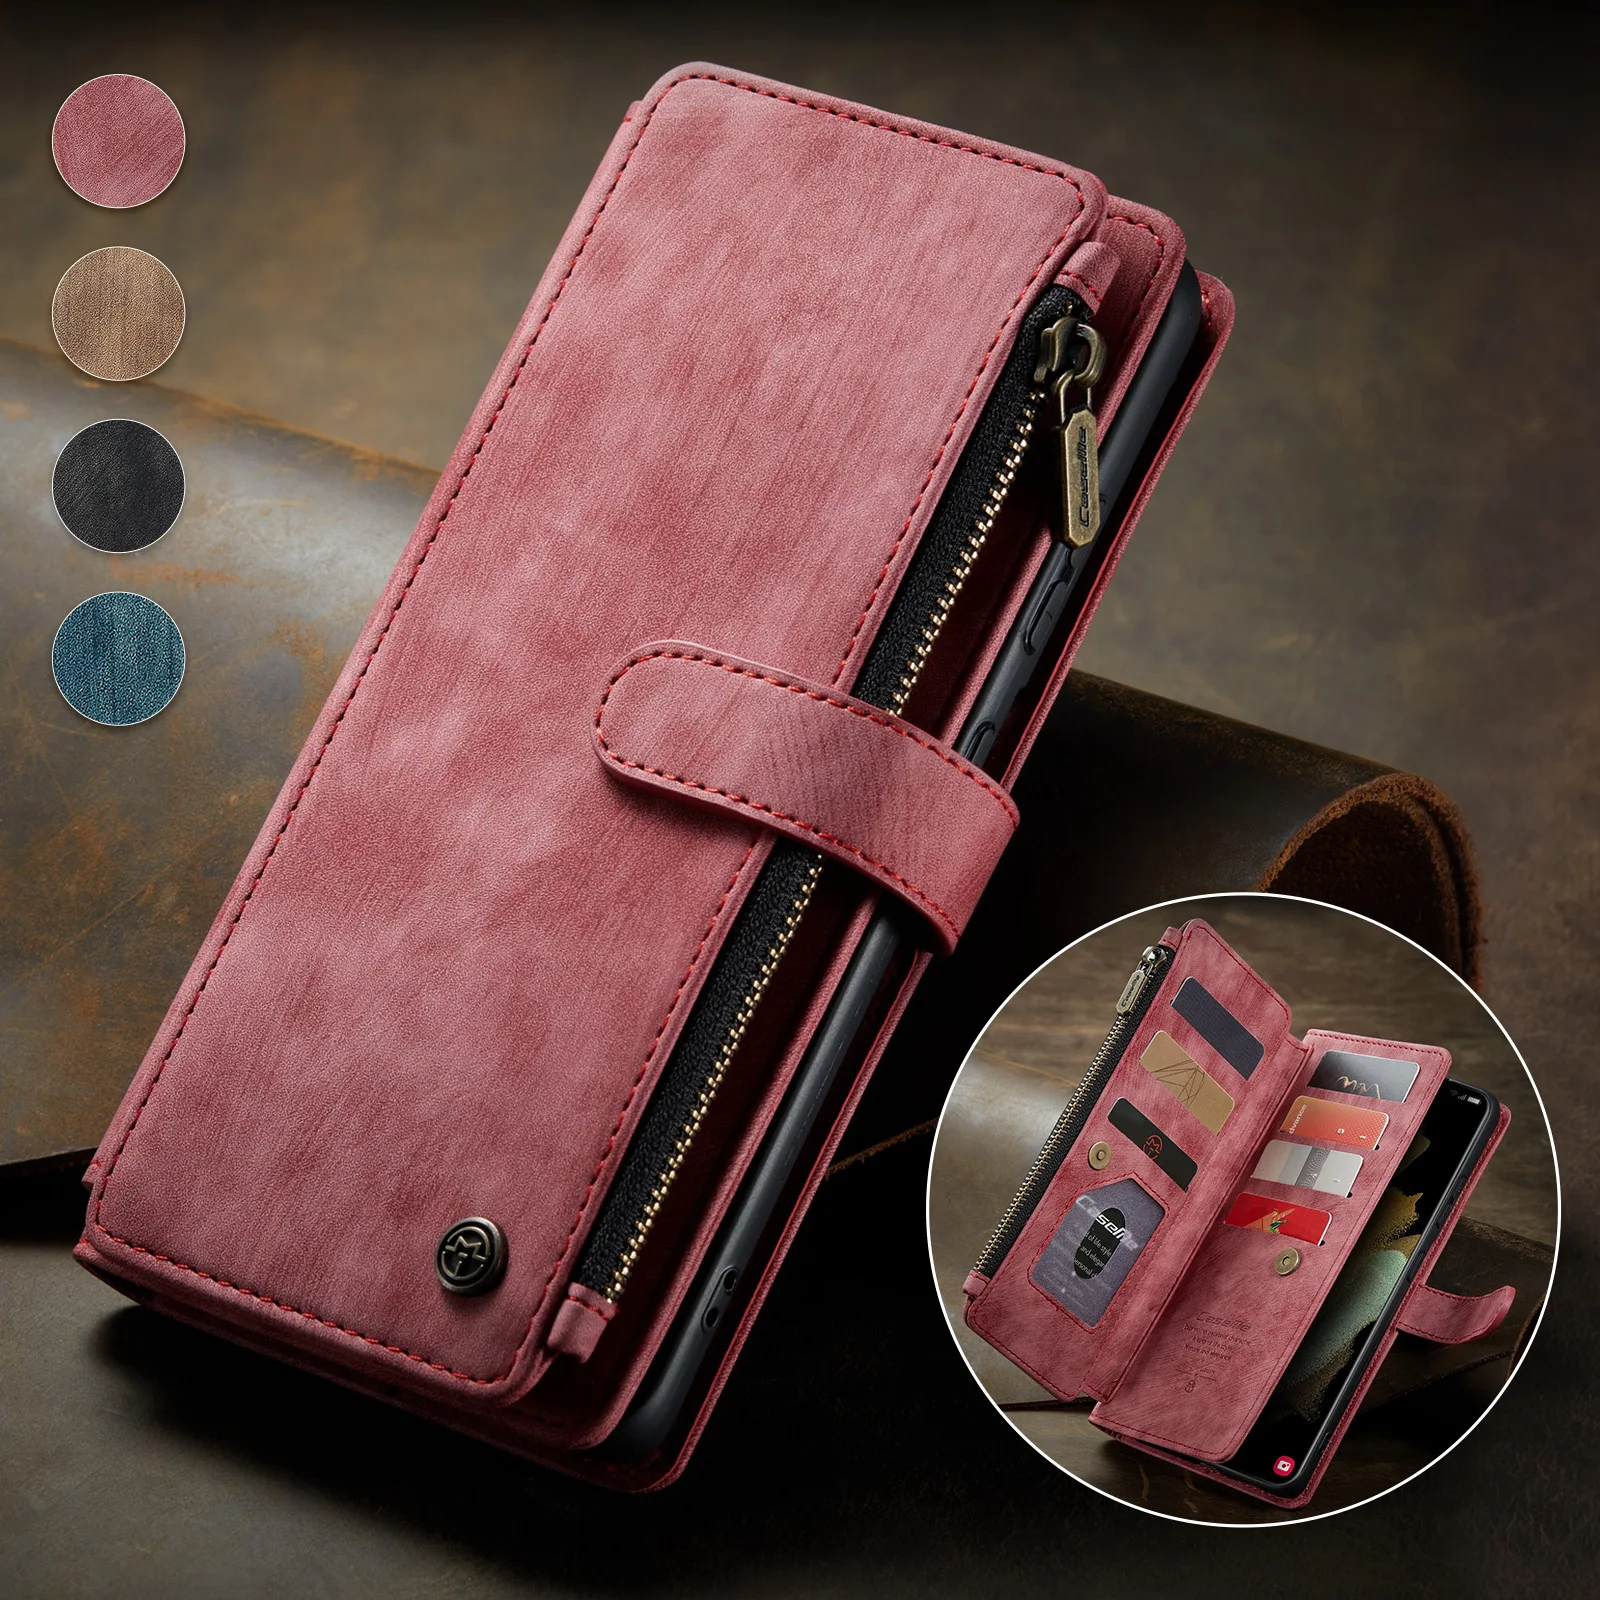 

Применимый Новый чехол для телефона Samsung S21ultra A52, кожаный чехол для телефона Note20, кожаный чехол-бумажник в стиле ретро S20fe